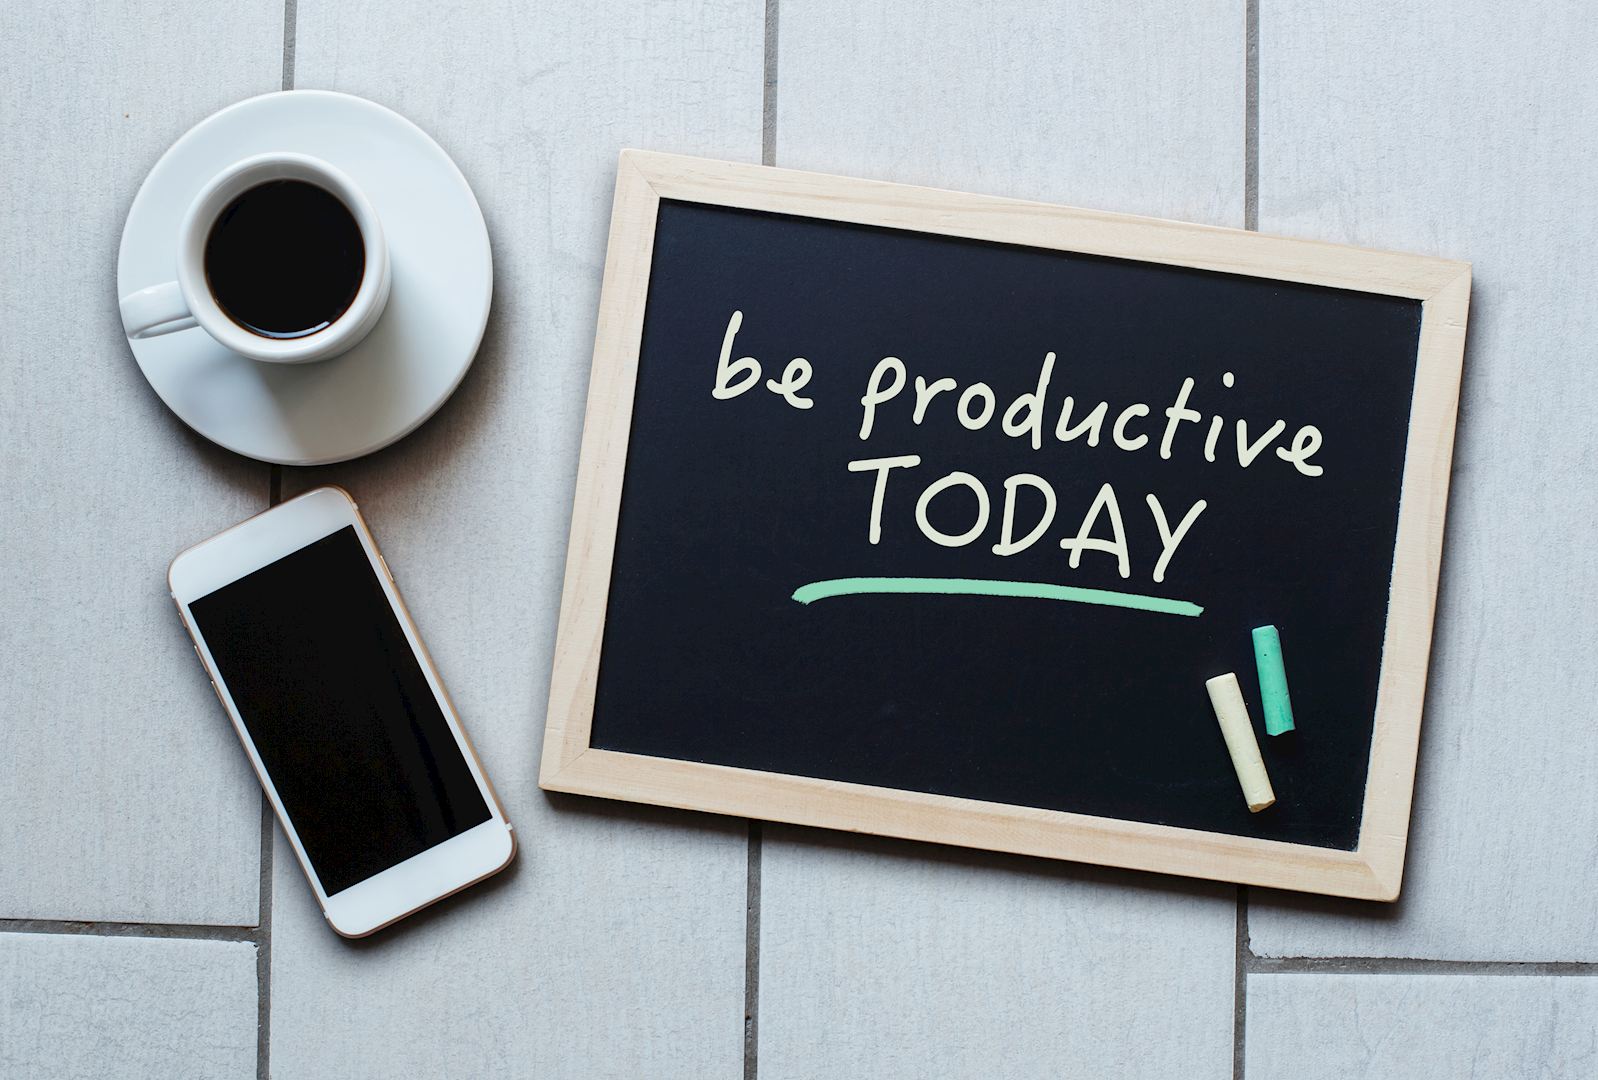 3 kleine ingrepen voor een productievere werkdag